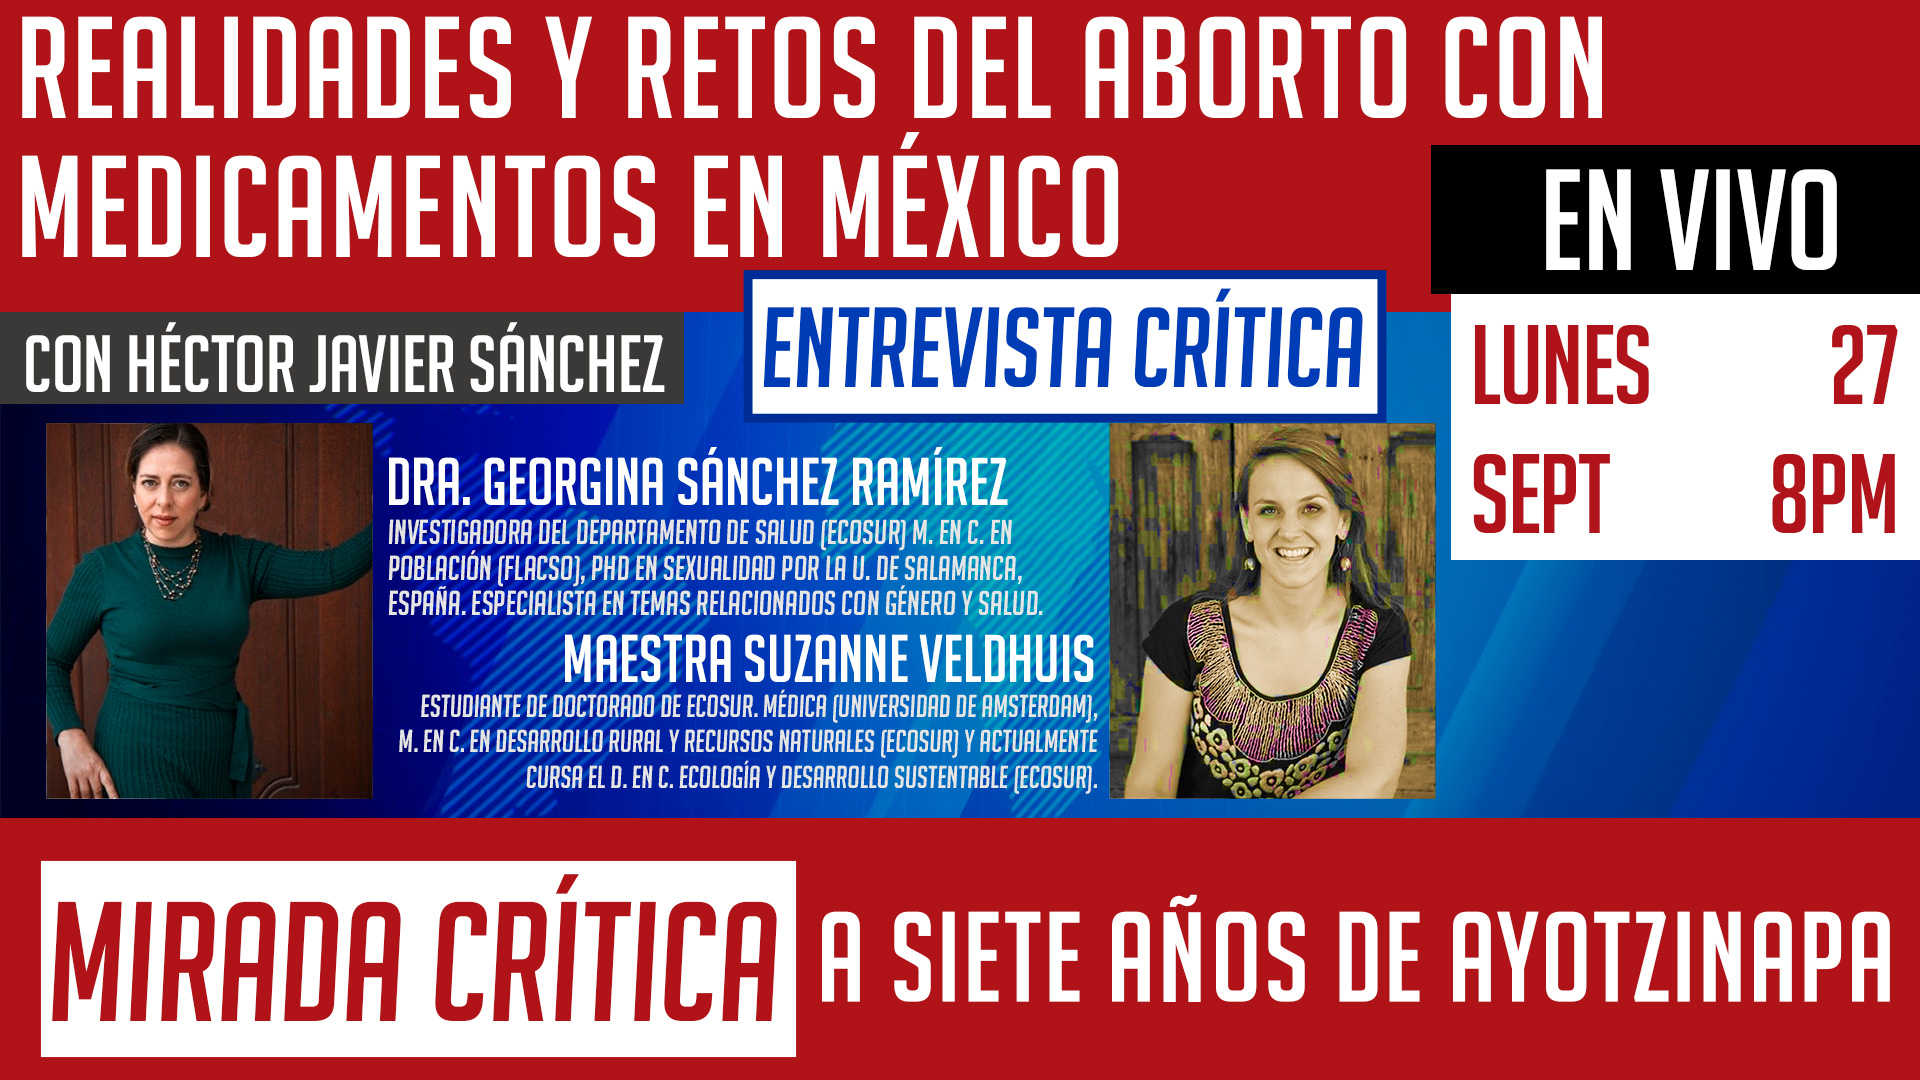 Realidades y retos del aborto con medicamentos en México/Ayotzinapa: A siete años de Ayotzinapa - Mirada Crítica